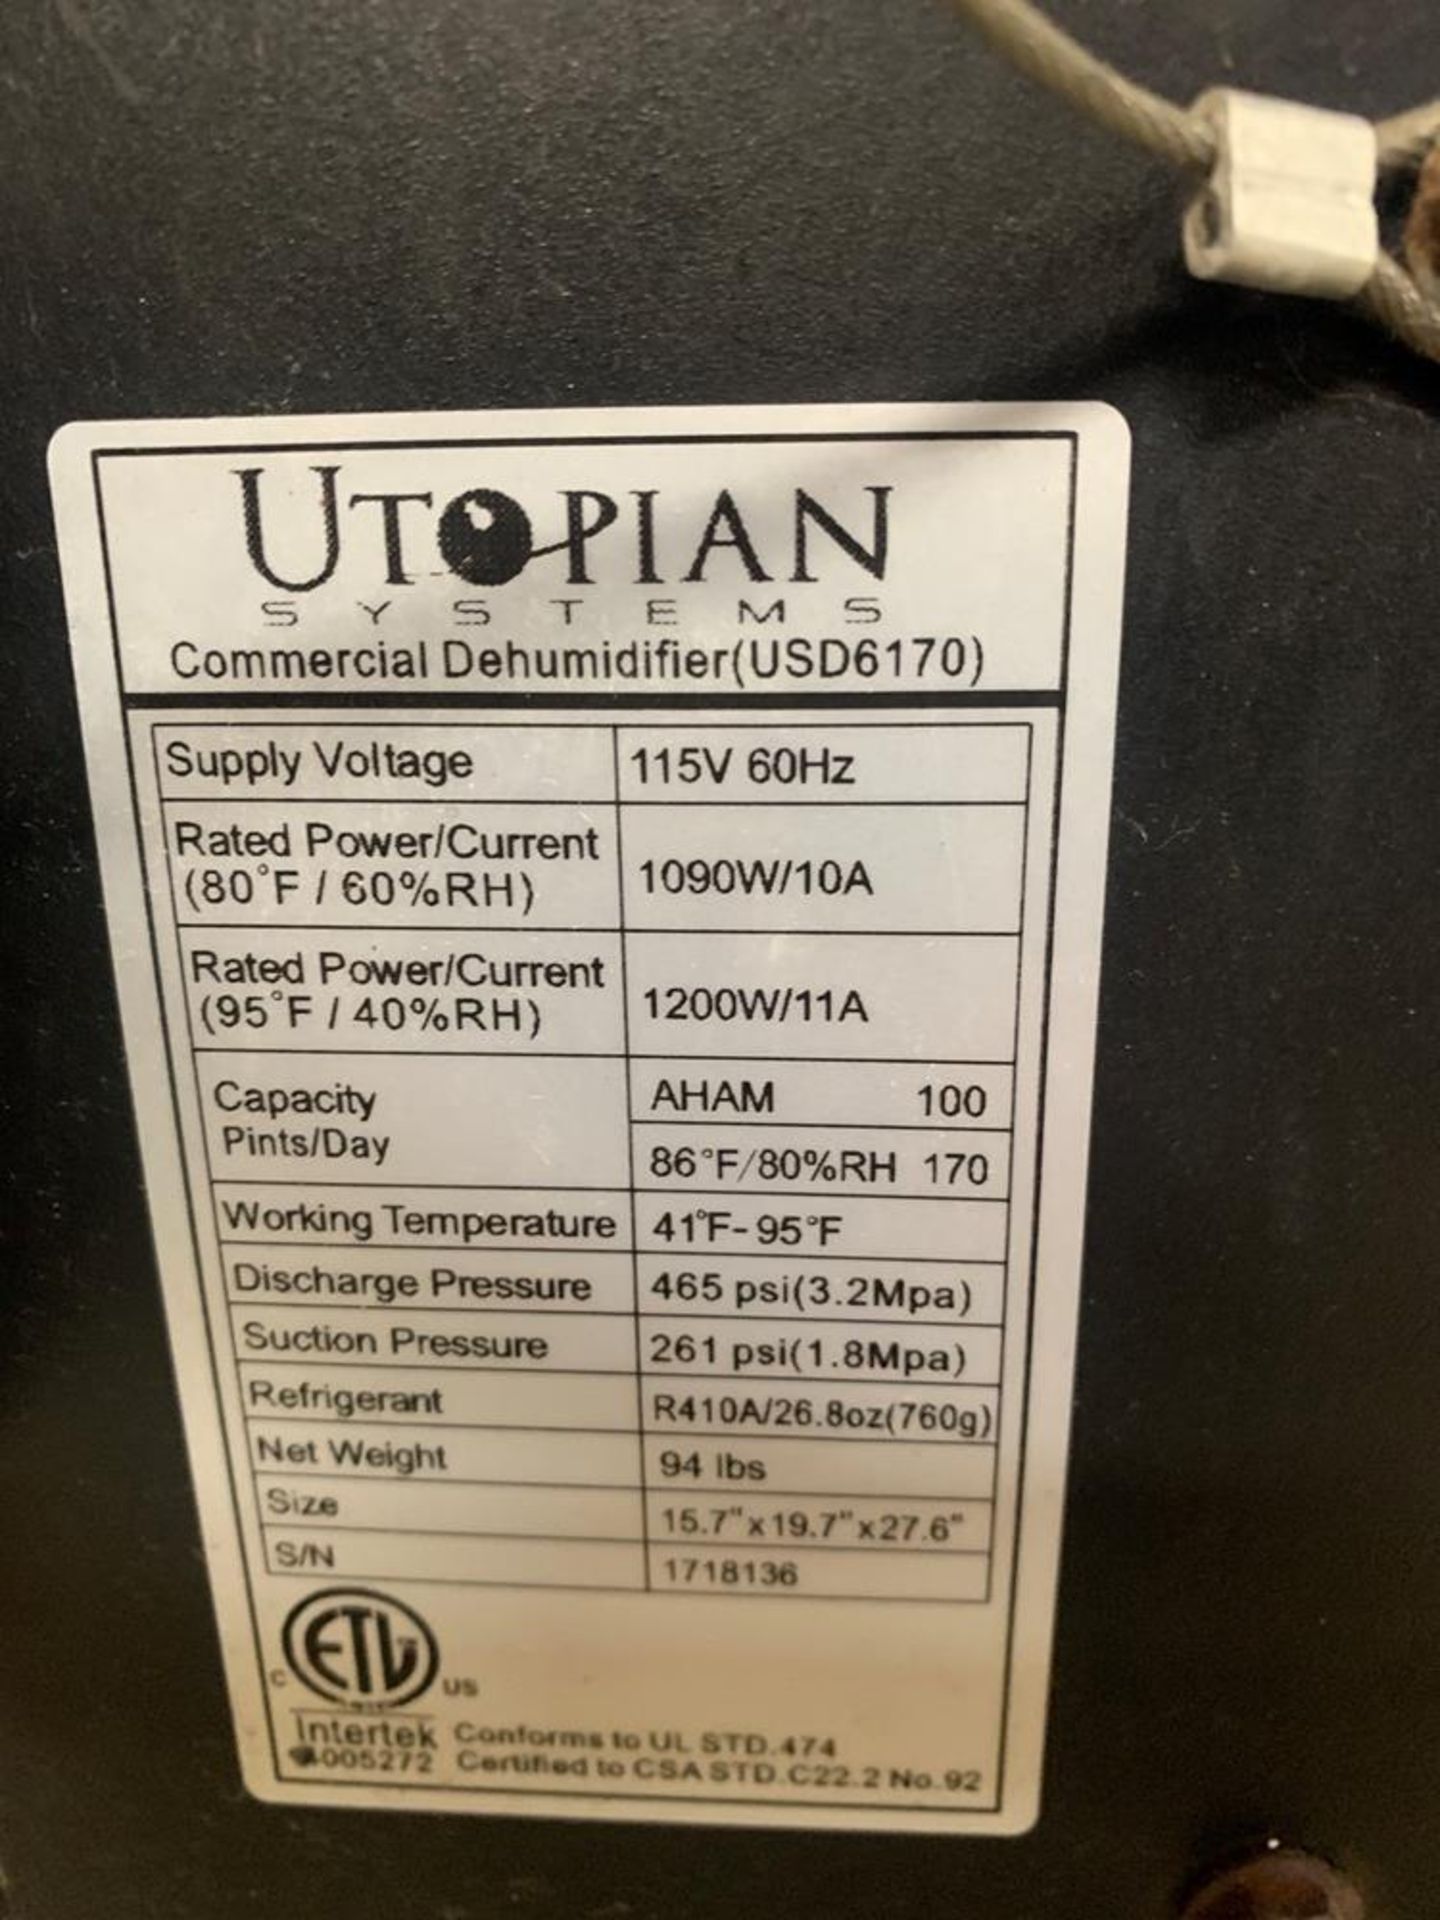 Utopian Mdl. USD6170 Dehumidifier, 115 volts, 100 pints per day, (2) agitators - Image 3 of 3